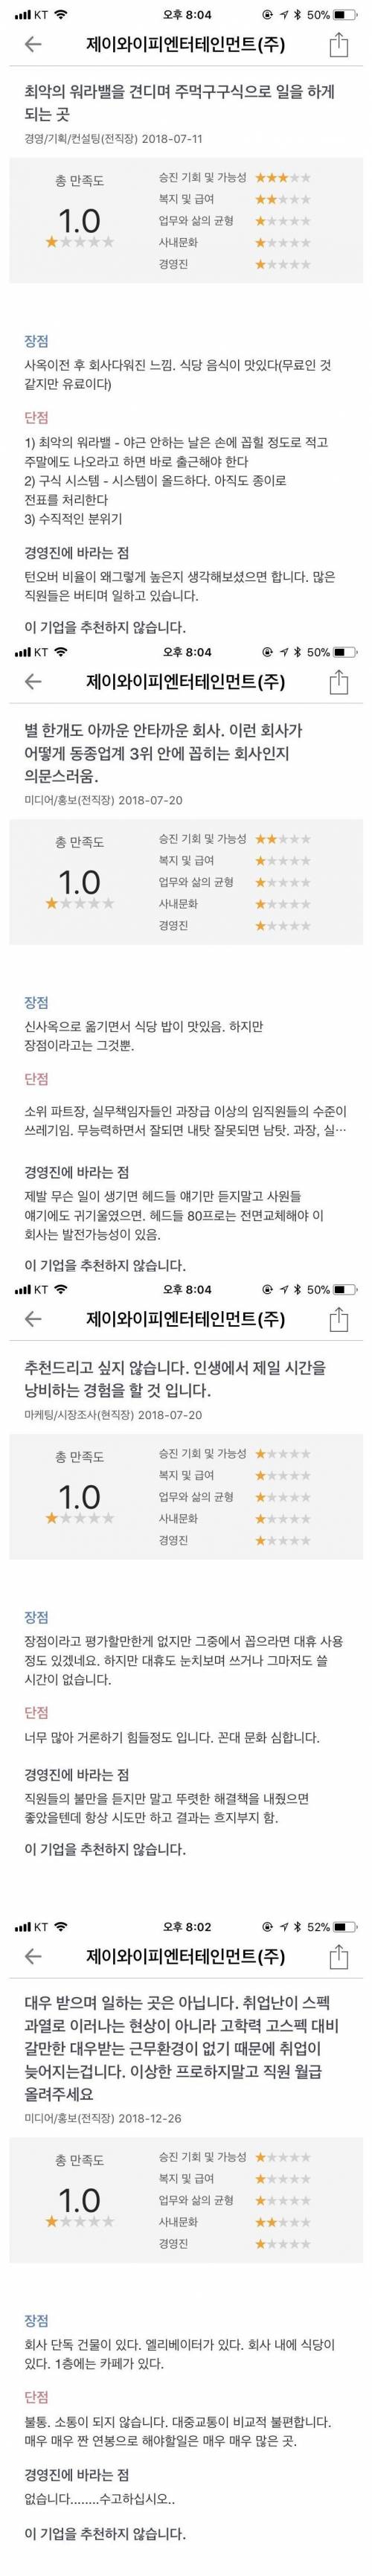 전현직 직원들의 JYP평가.jpg